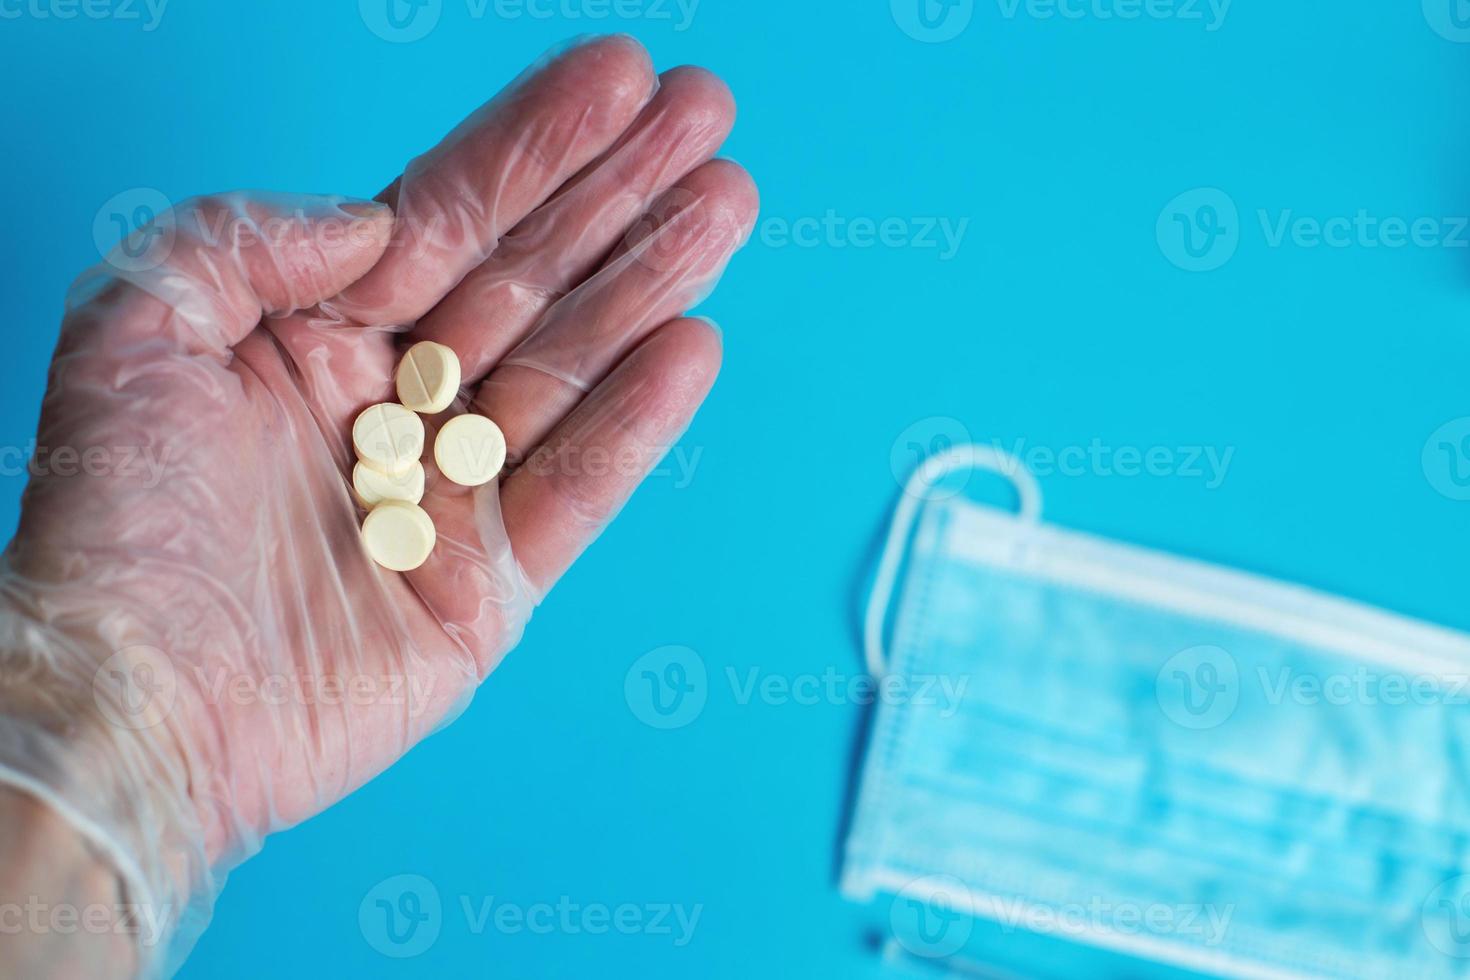 medicinsk mask och tabletter stänga på de blå bakgrund. hand innehar piller. coronavirus, influensa respiratorisk sjukdom begrepp foto